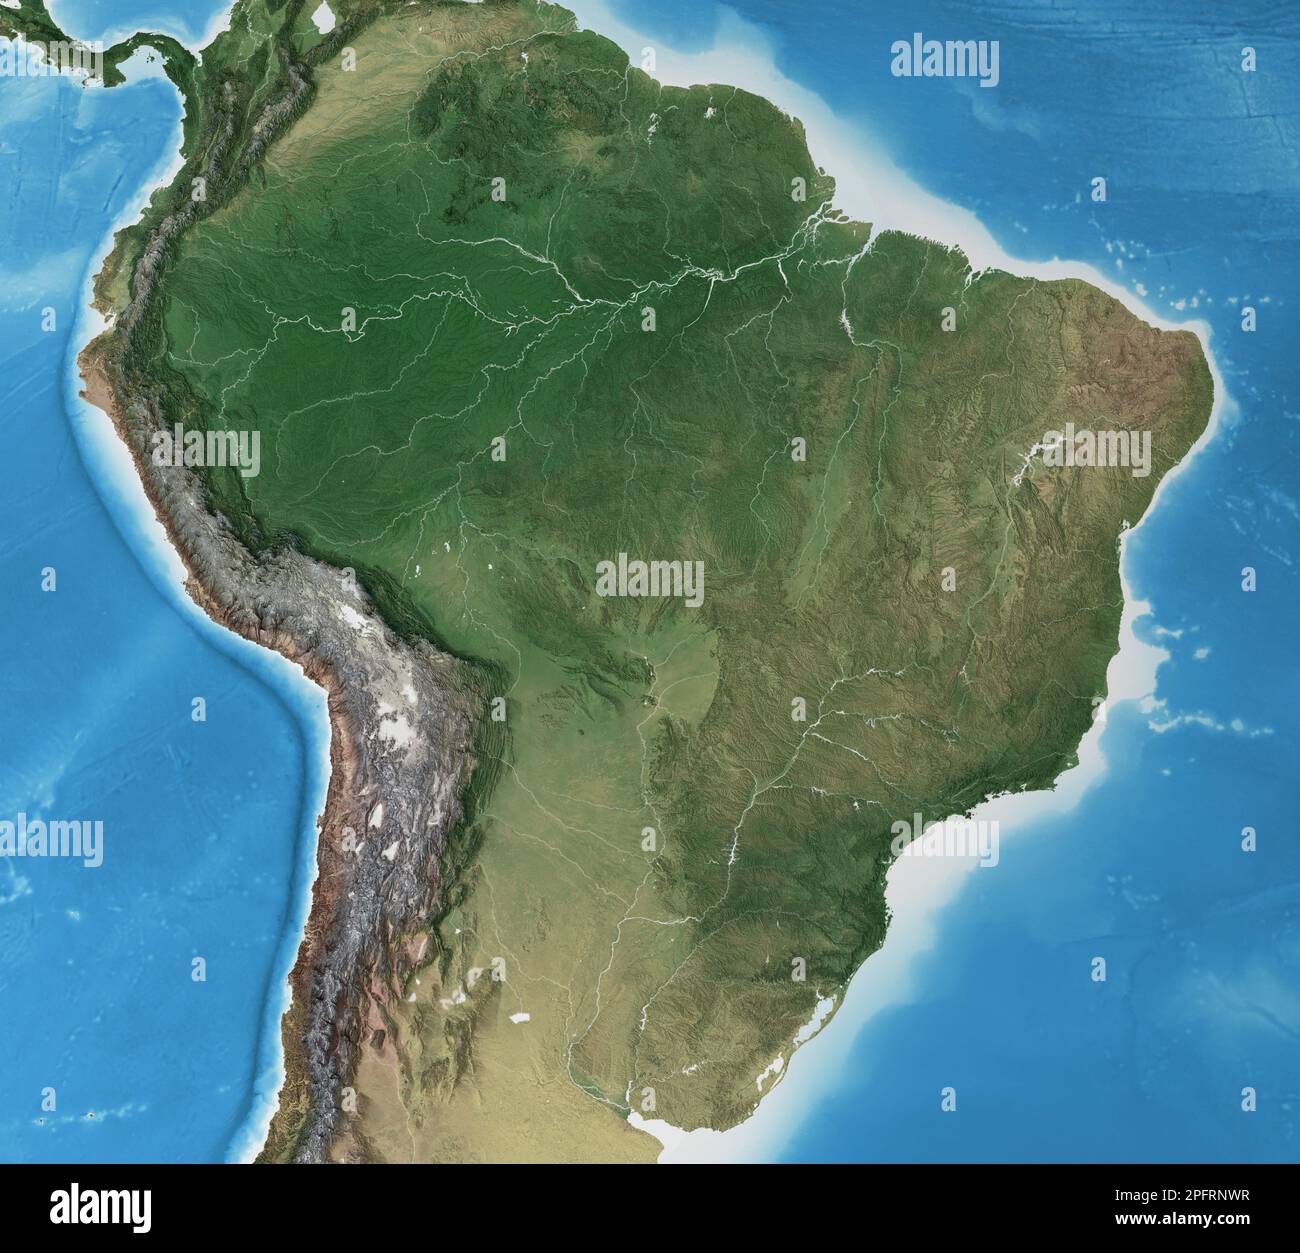 Physische Karte von Brasilien. Geographie und Topographie des Amazonas-Regenwaldes. Detaillierte flache Ansicht des Planeten Erde - Elemente der NASA Stockfoto